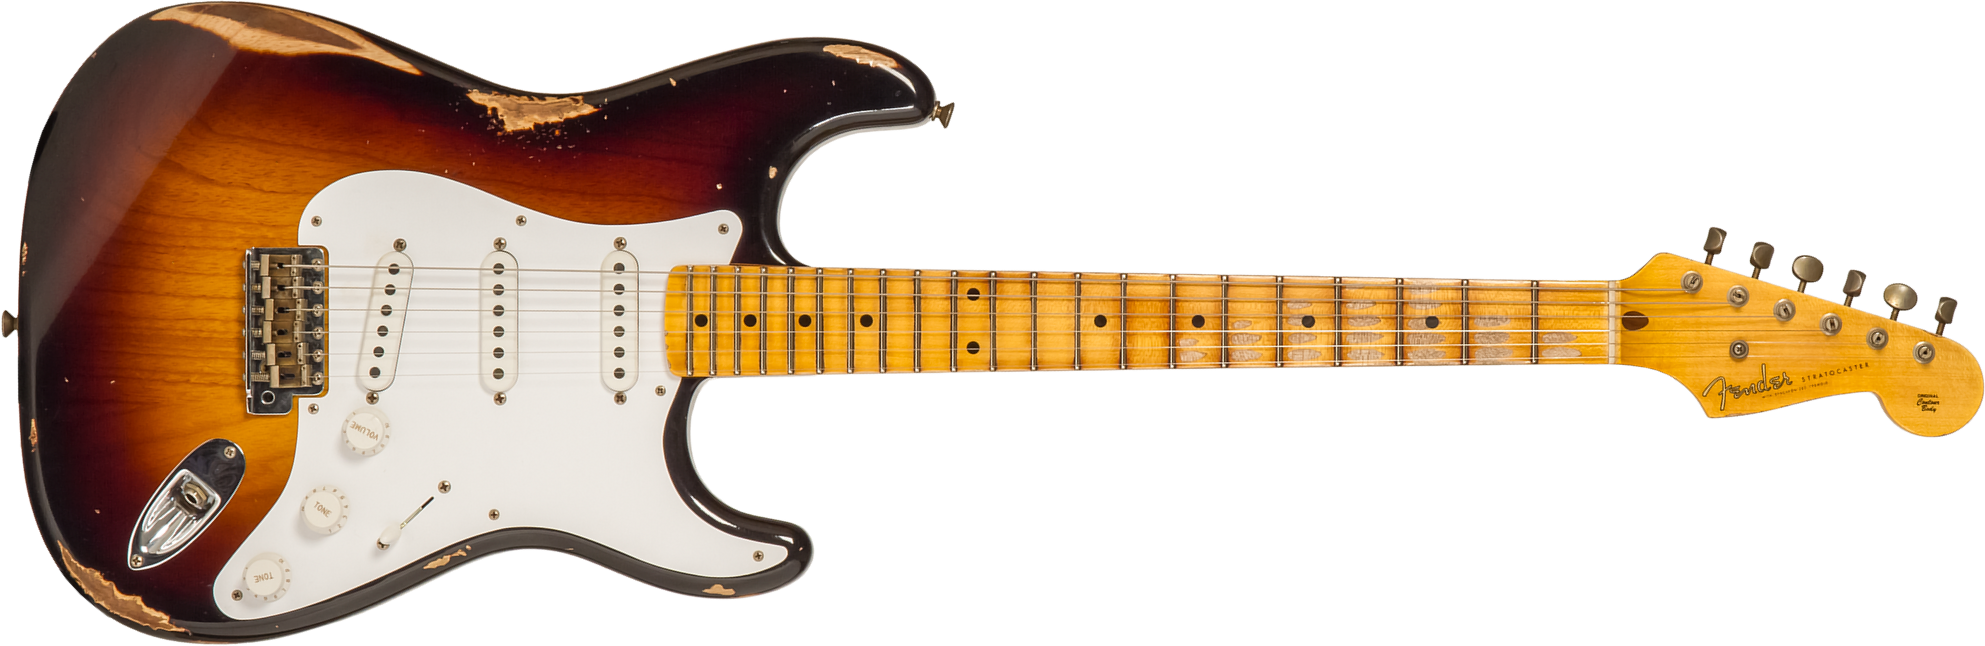 Fender Custom Shop Strat 1954 70th Anniv. 3s Trem Mn #xn4316 - Relic Wide Fade 2-color Sunburst - Guitare Électrique Forme Str - Main picture